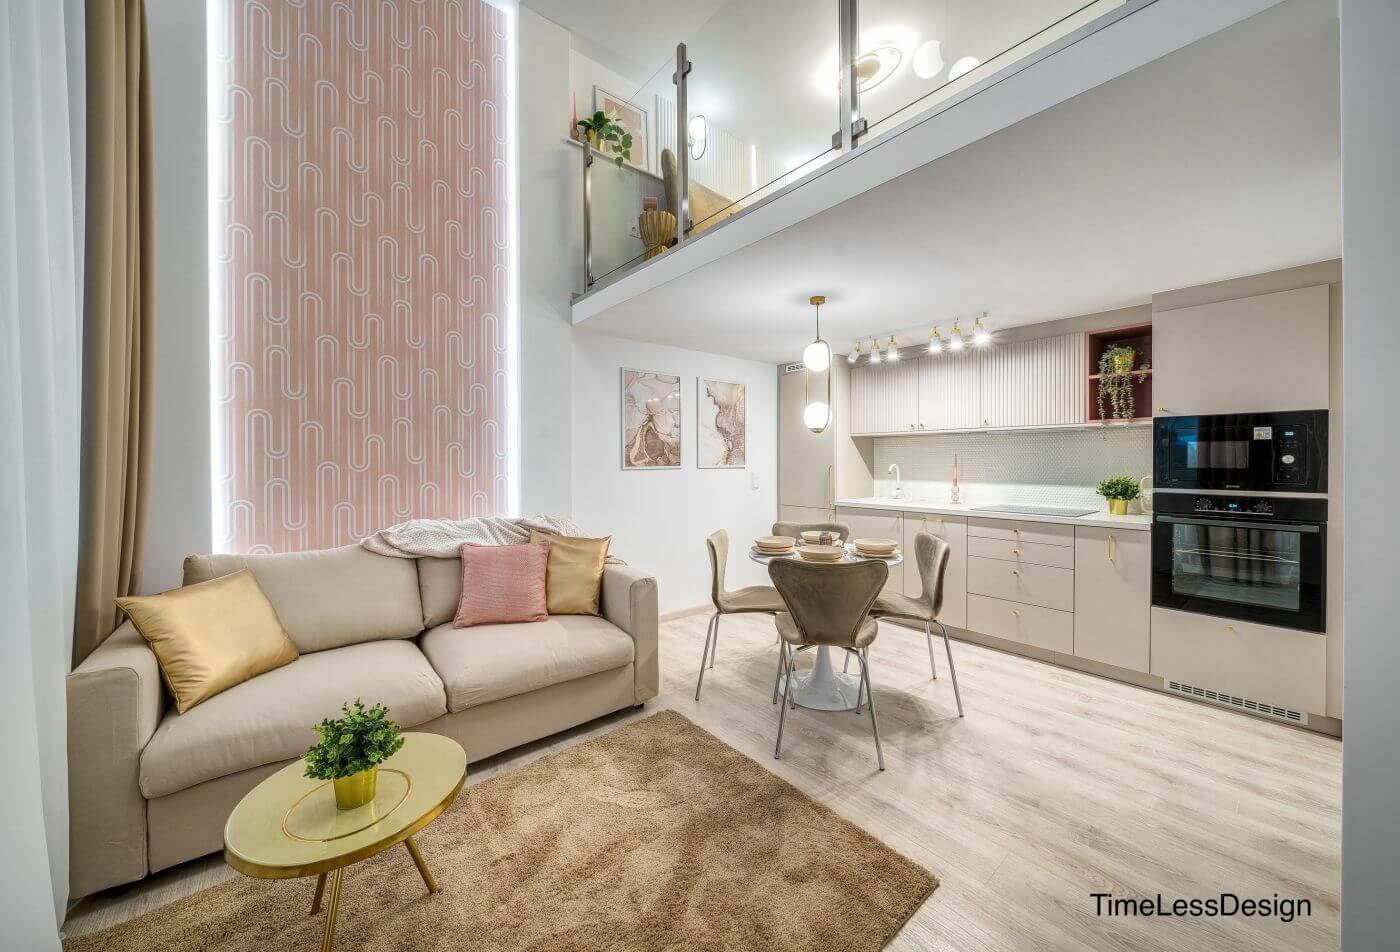 Belvárosi 30 m2-es kis lakás trendi berendezéssel - Ahol ellágyulnak a női szívek